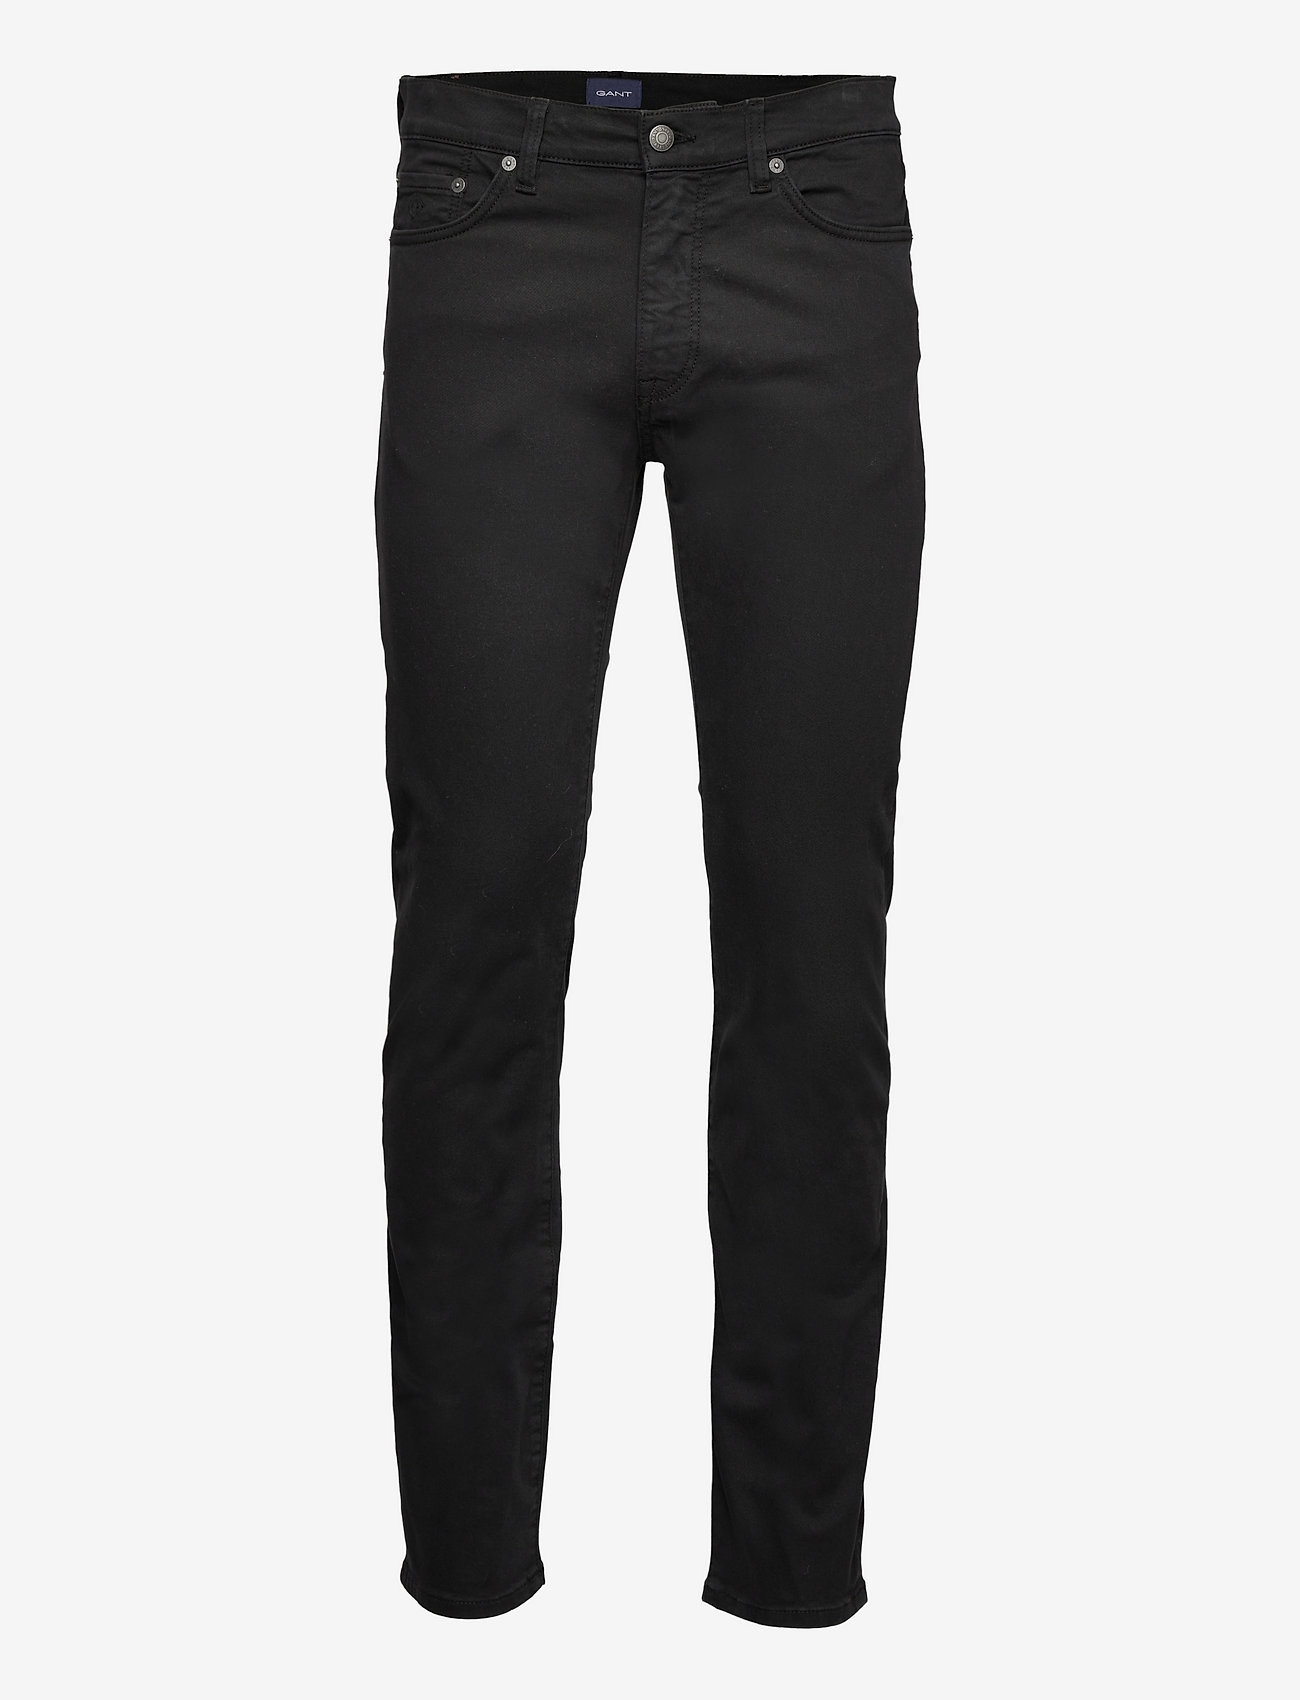 GANT - ARLEY DESERT JEANS - regular jeans - black - 0